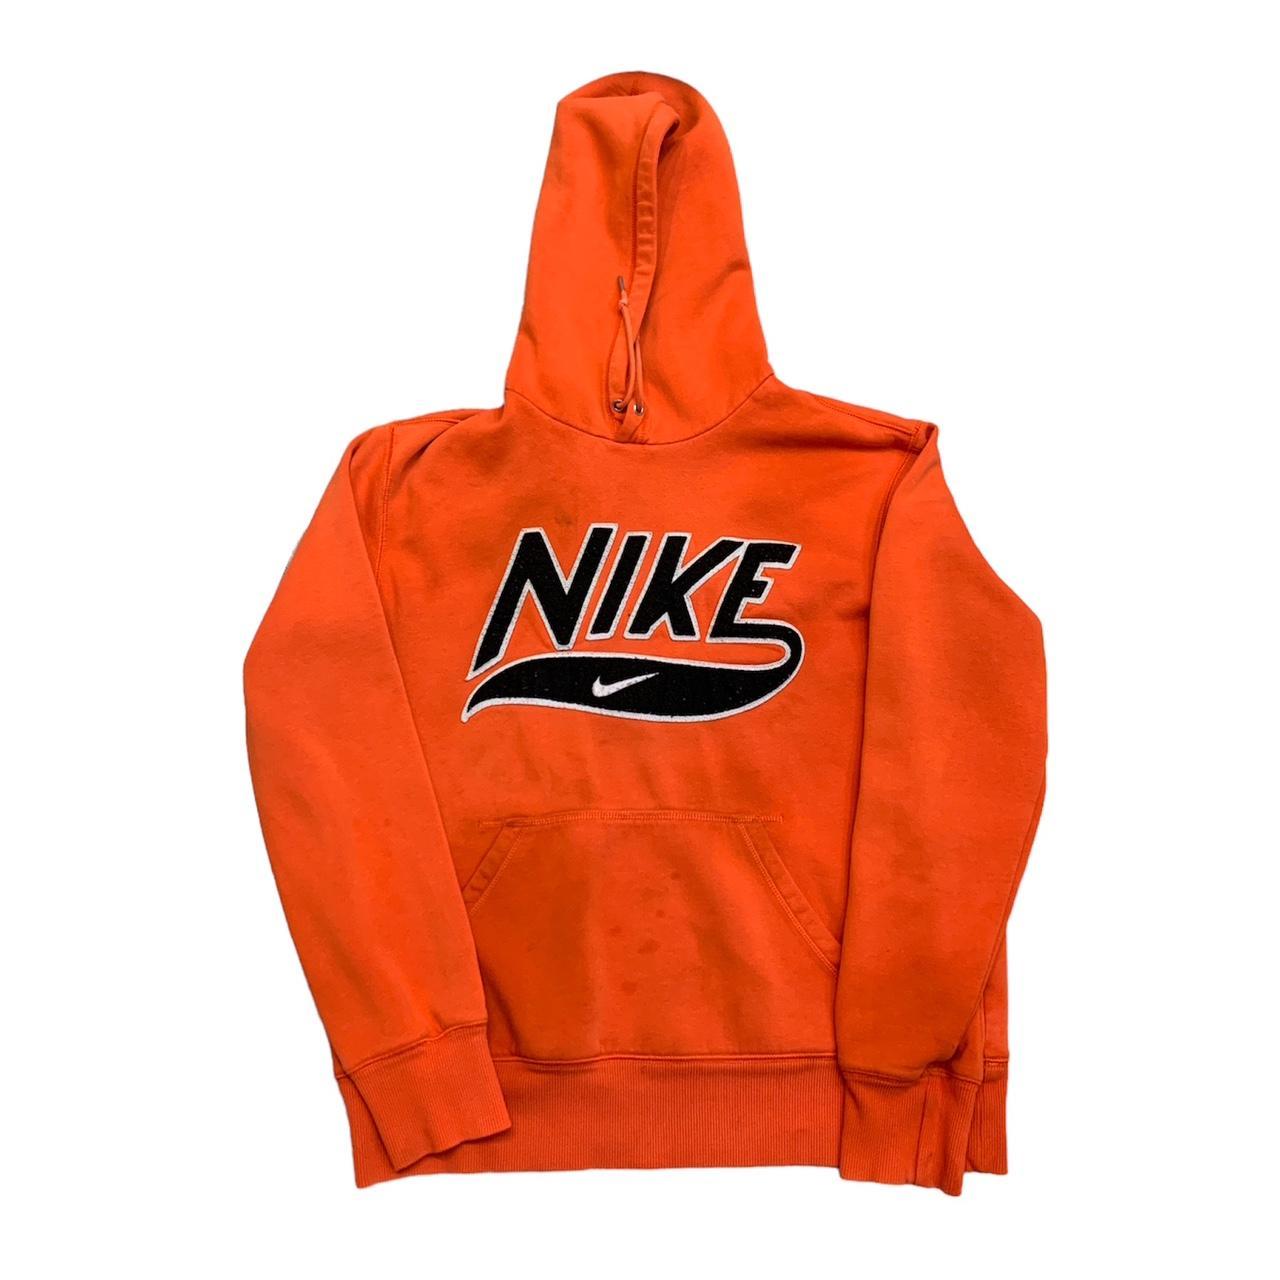 Nike Men's Orange and Black Hoodie | Depop